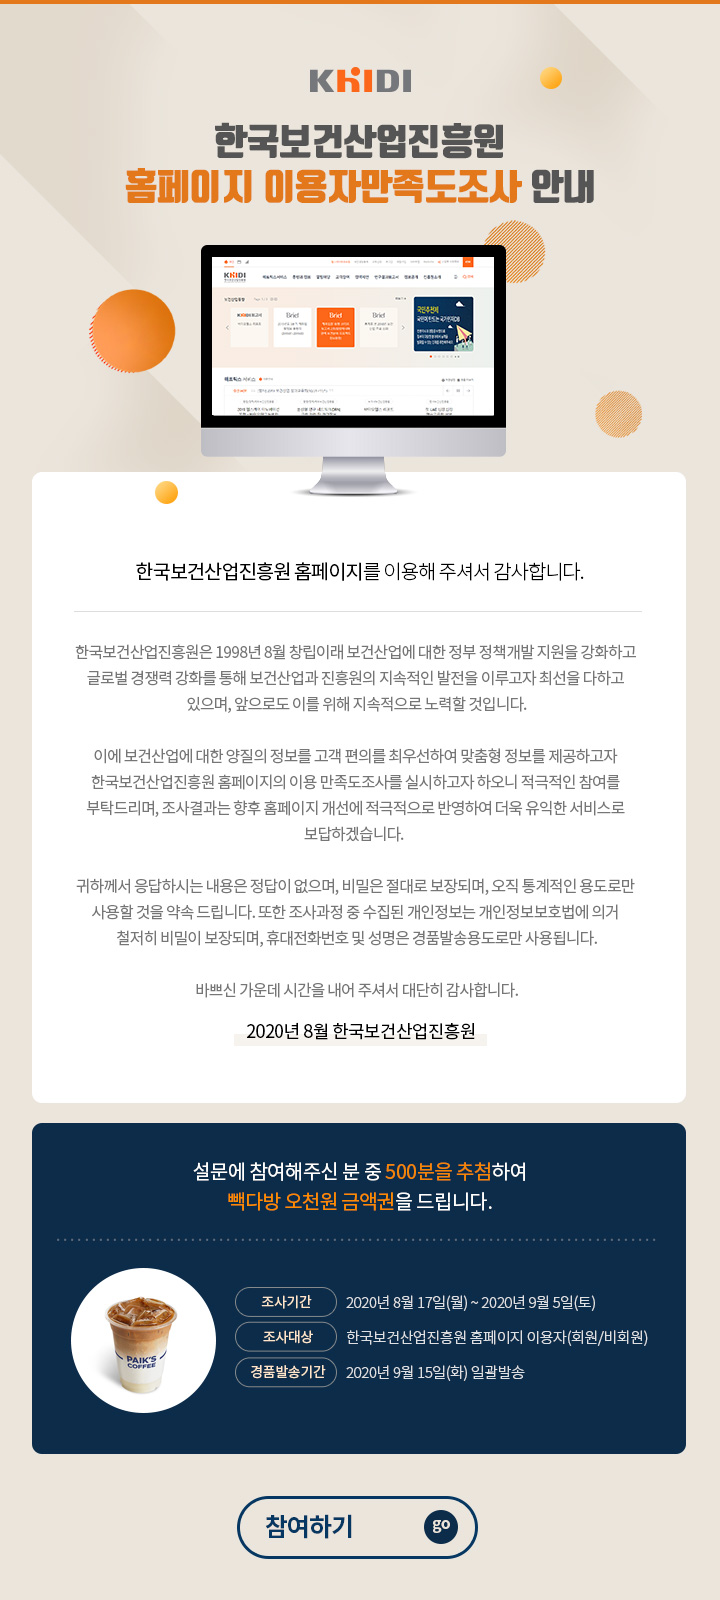 한국보건산업진흥원 홈페이지 이용자만족도조사